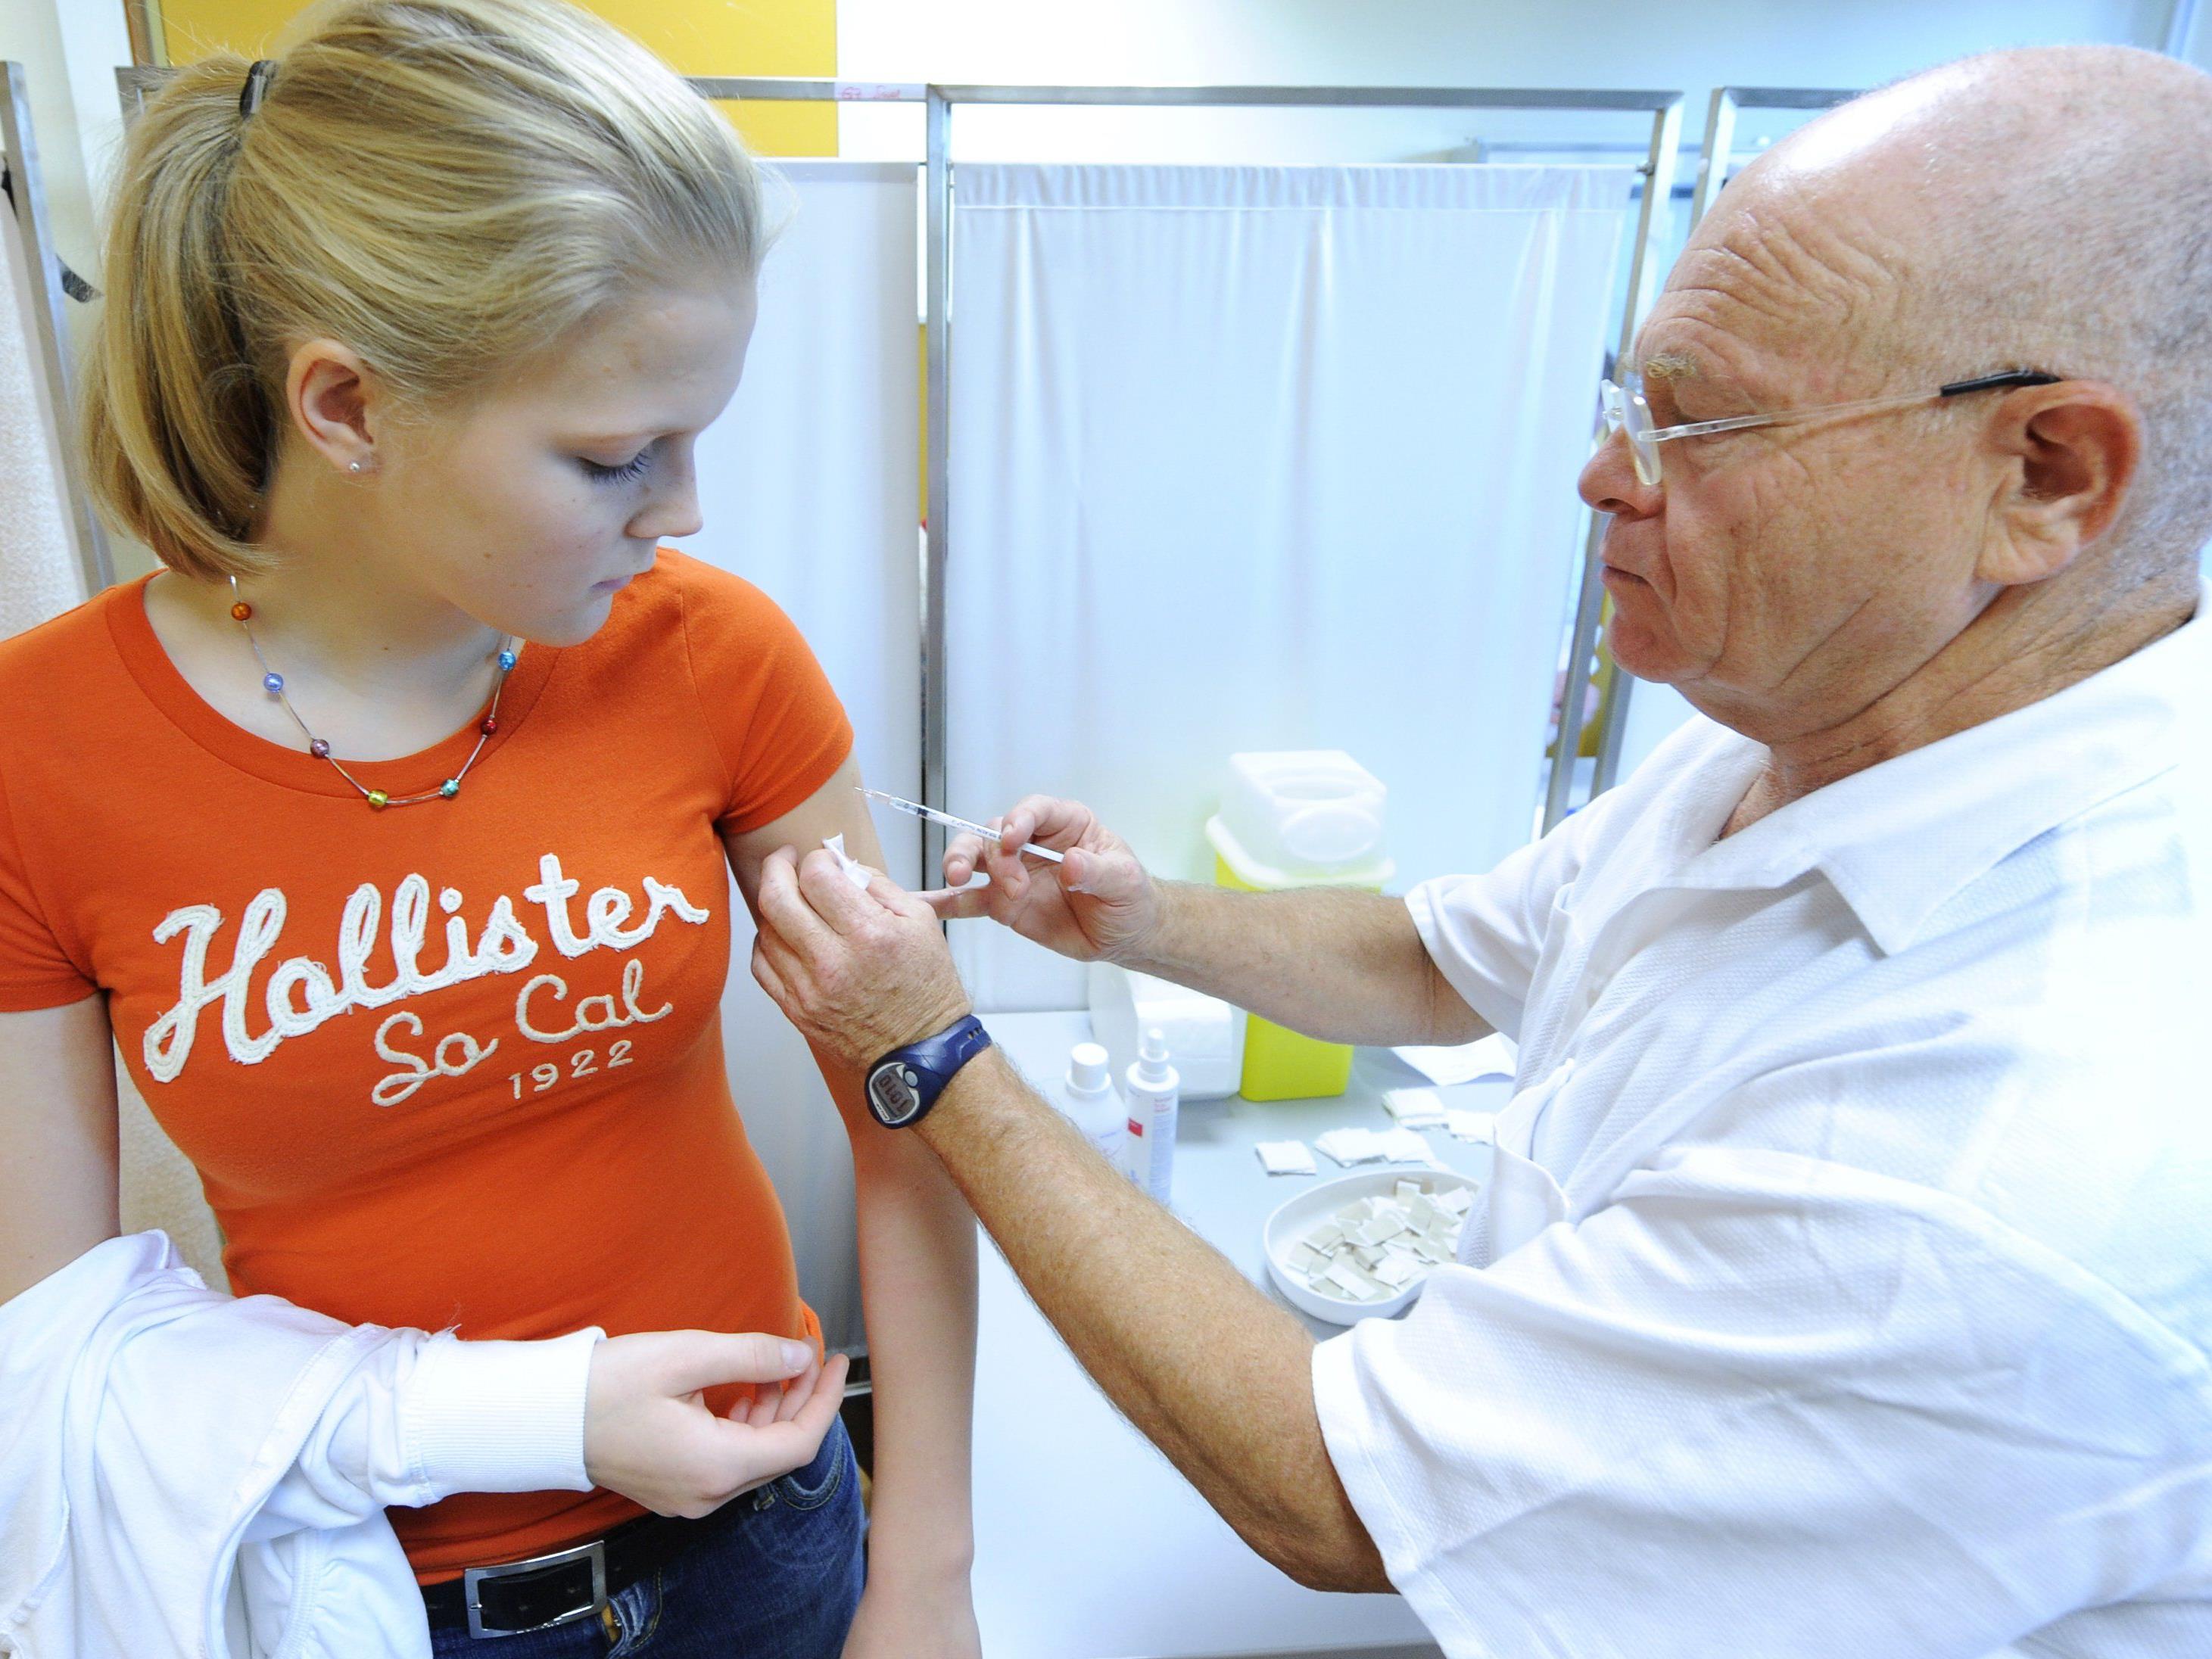 Spezial-Impfstelle an der MedUni Wien für Risikogruppen ab 22. Oktober.